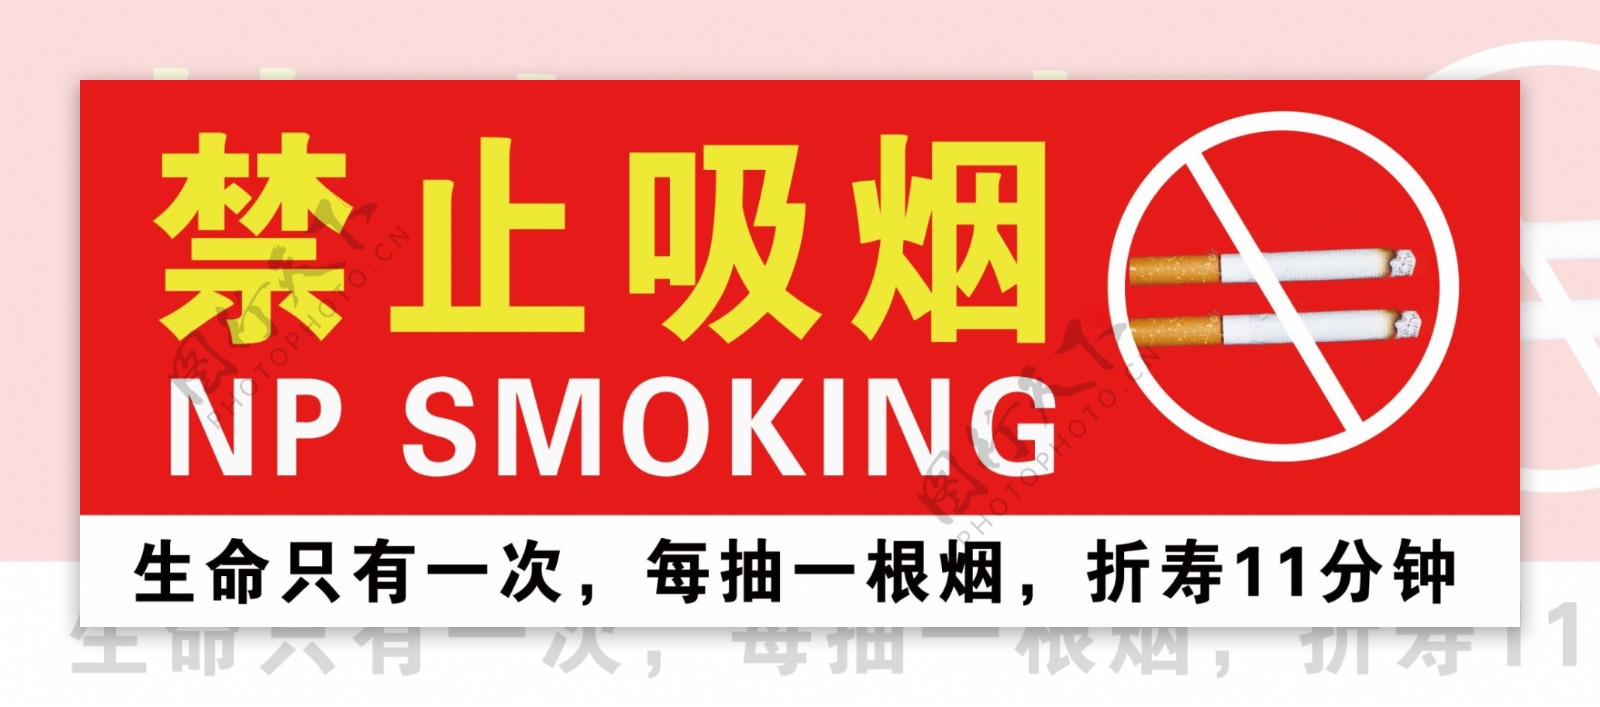 禁止吸烟禁止抽烟请勿吸烟